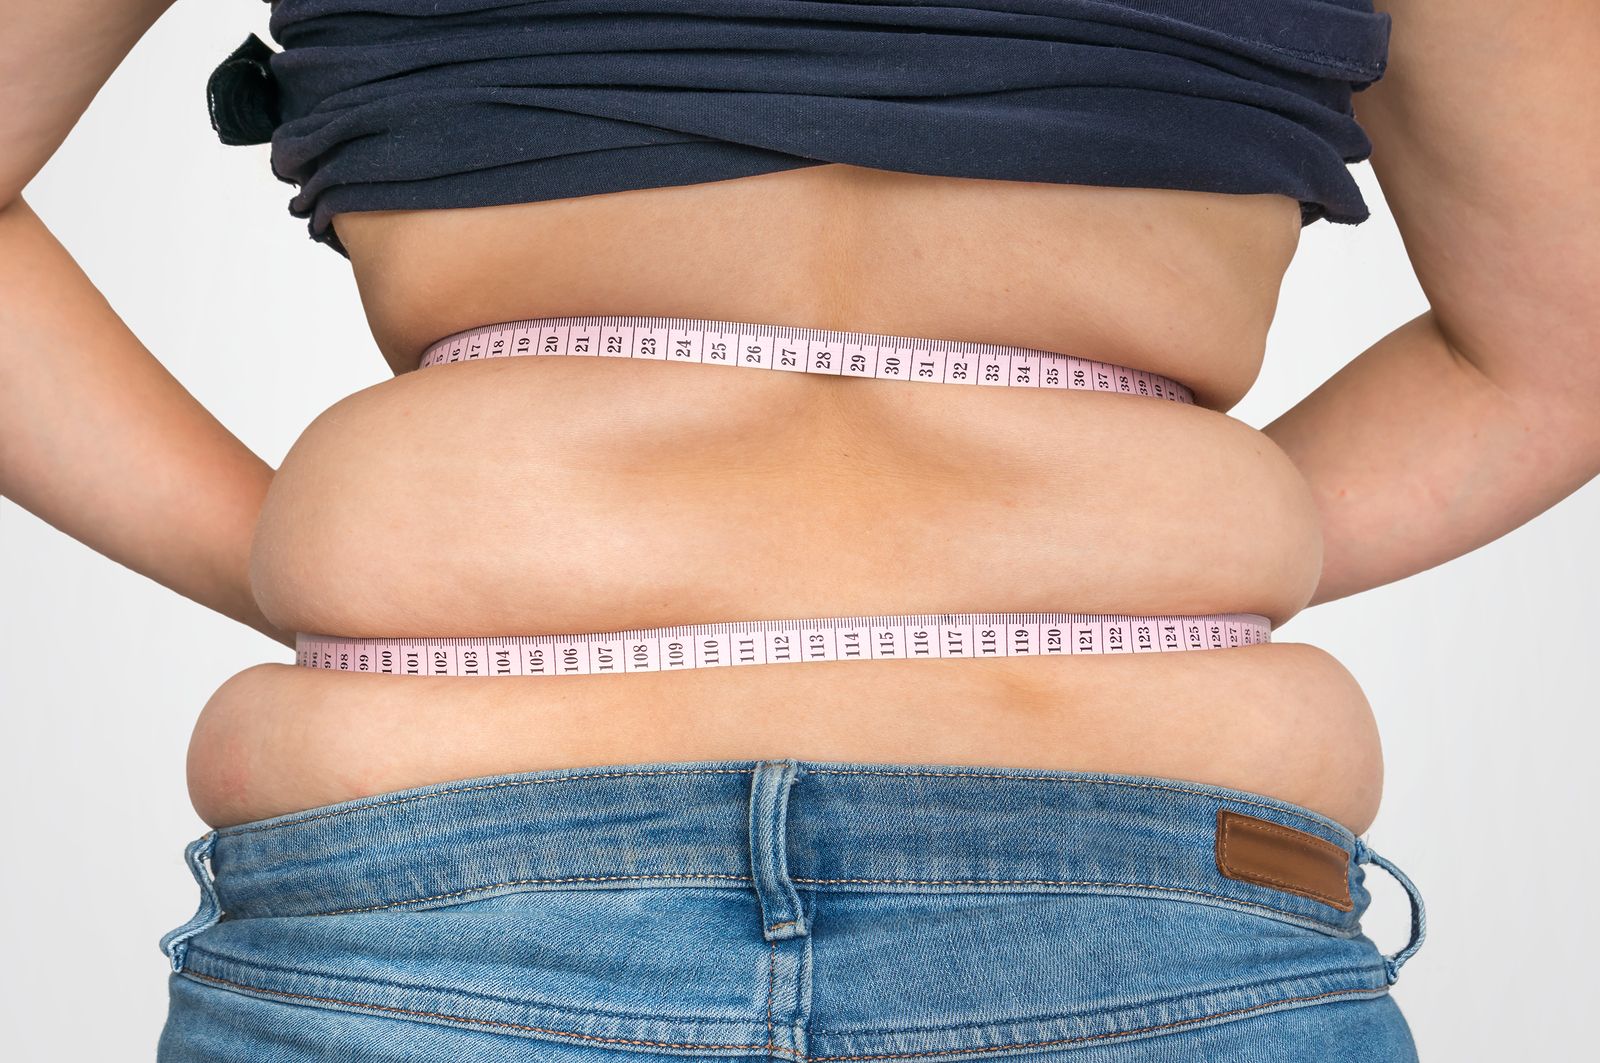 Demostrado: comer rápido aumenta el riesgo de sobrepeso